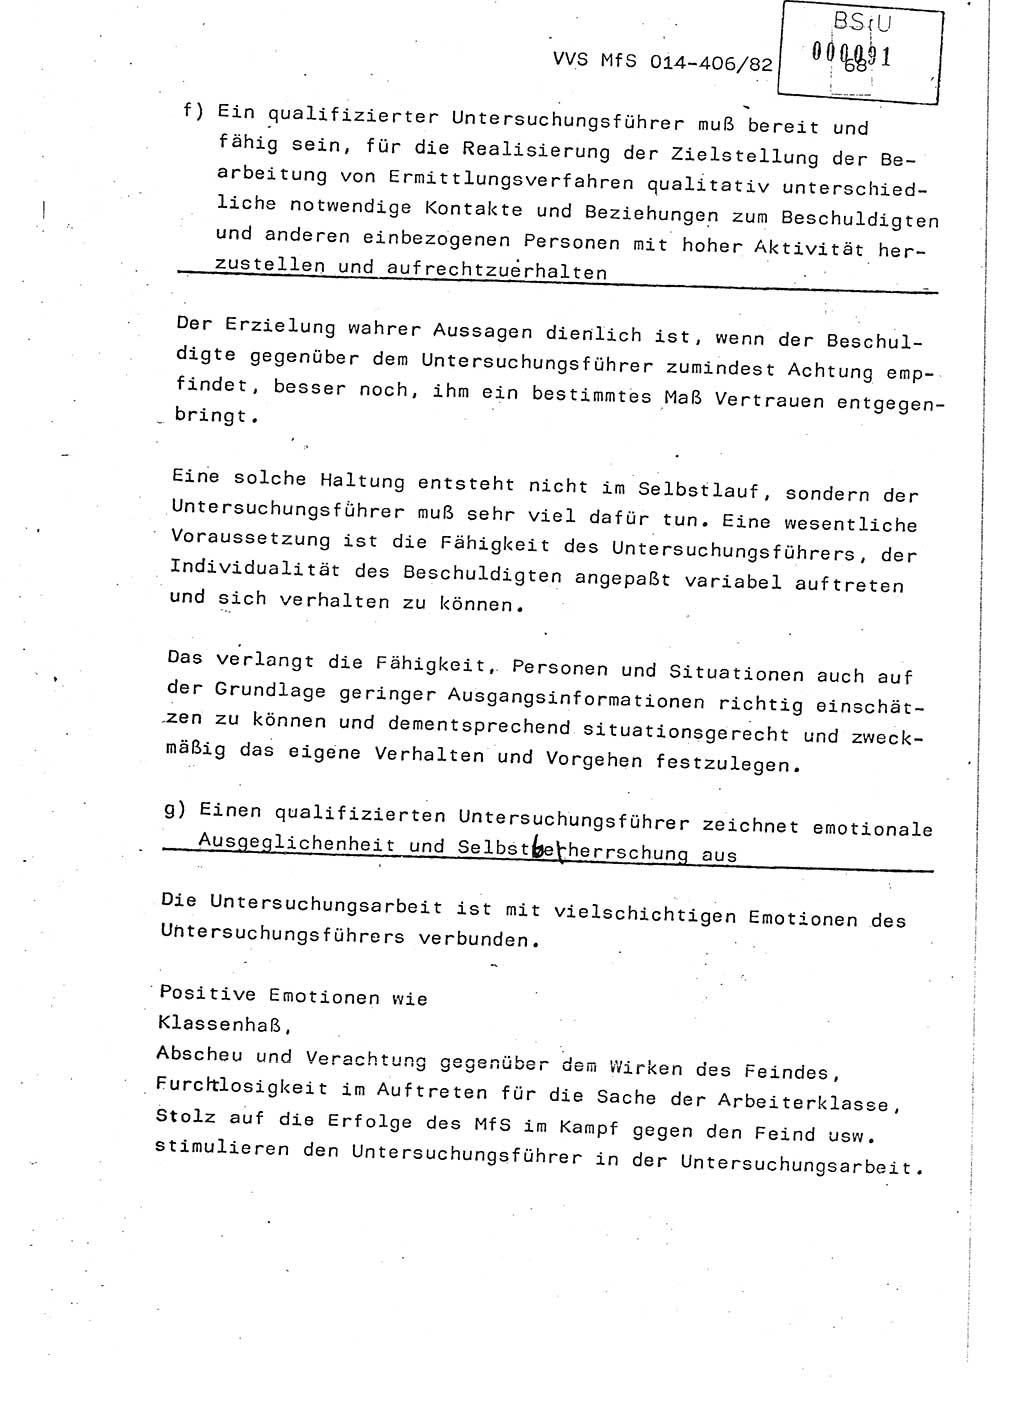 Lektion Ministerium für Staatssicherheit (MfS) [Deutsche Demokratische Republik (DDR)], Hauptabteilung (HA) Ⅸ, Vertrauliche Verschlußsache (VVS) o014-406/82, Berlin 1982, Seite 68 (Lekt. MfS DDR HA Ⅸ VVS o014-406/82 1982, S. 68)